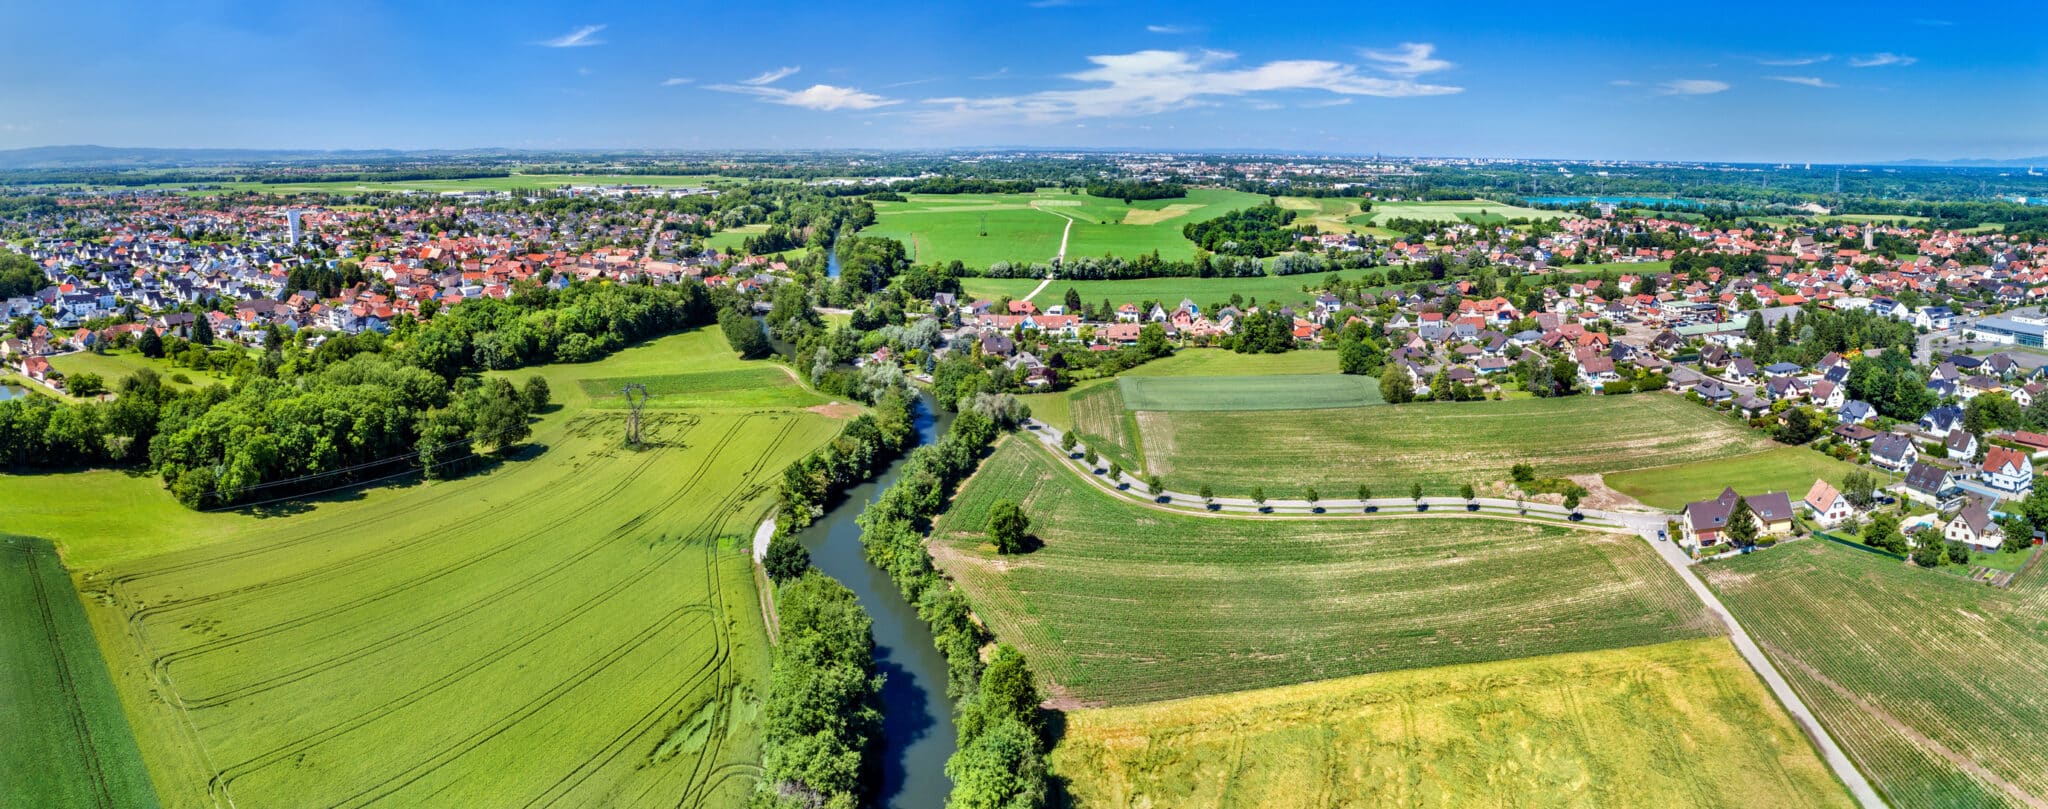 Vue aérienne d'une ville de campagne avec des champs et une rivière